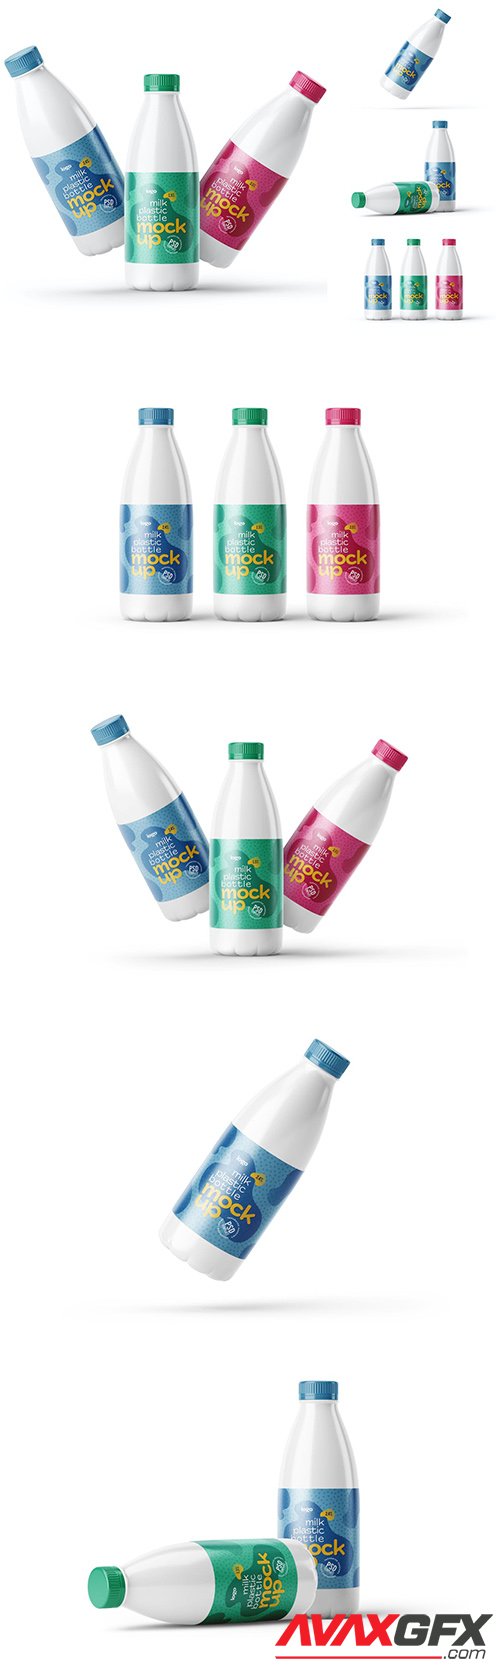 Plastic Milk Bottle Label Mockup Set